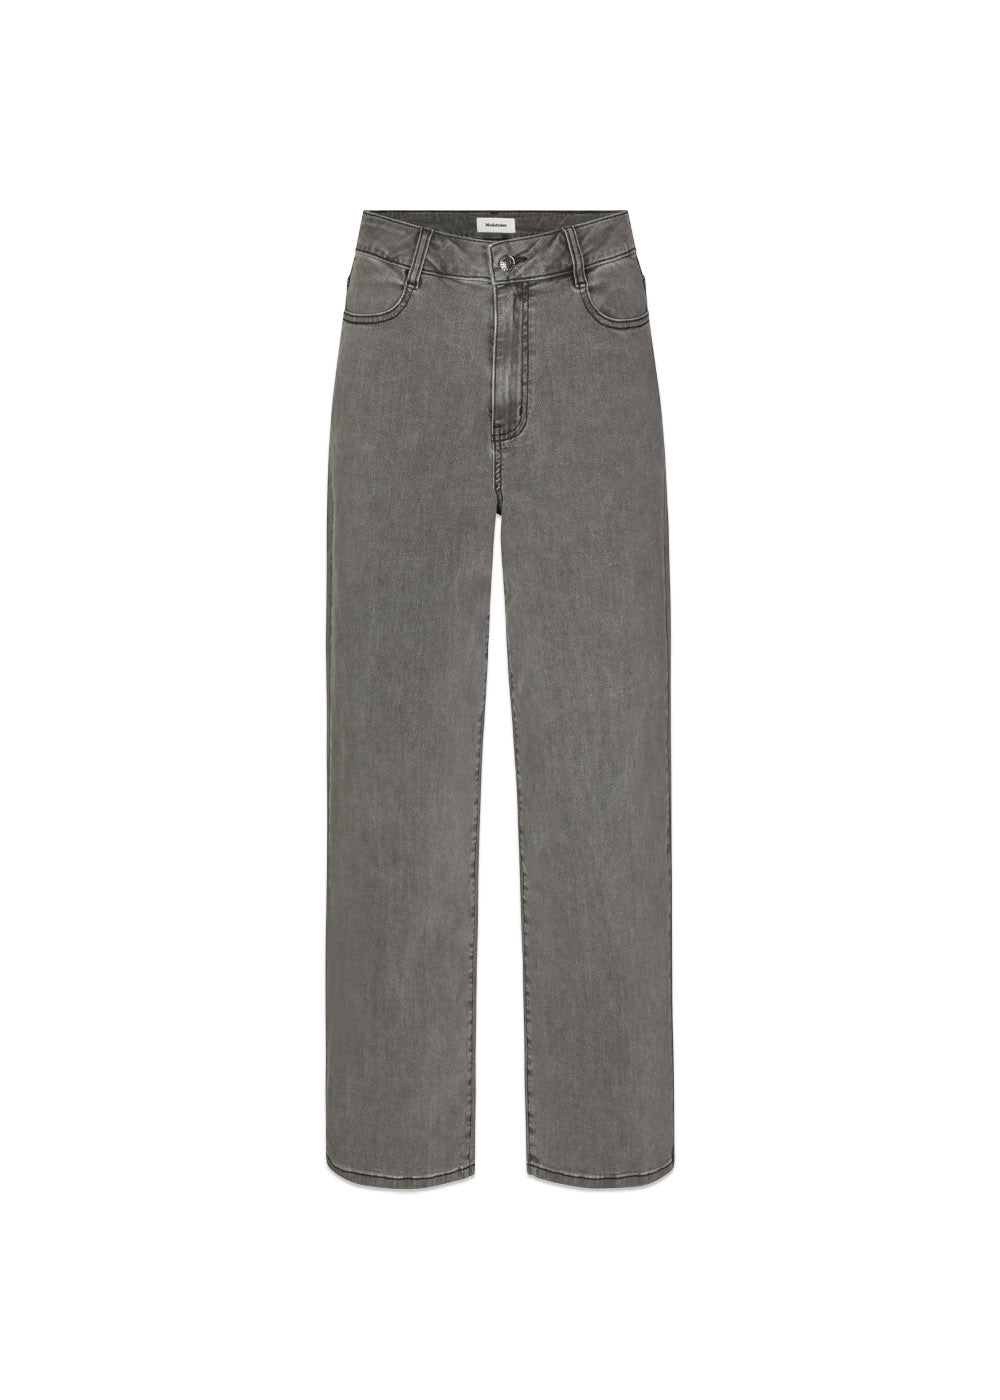 Modströms HarveyMD pants - Vintage Grey. Køb jeans her.